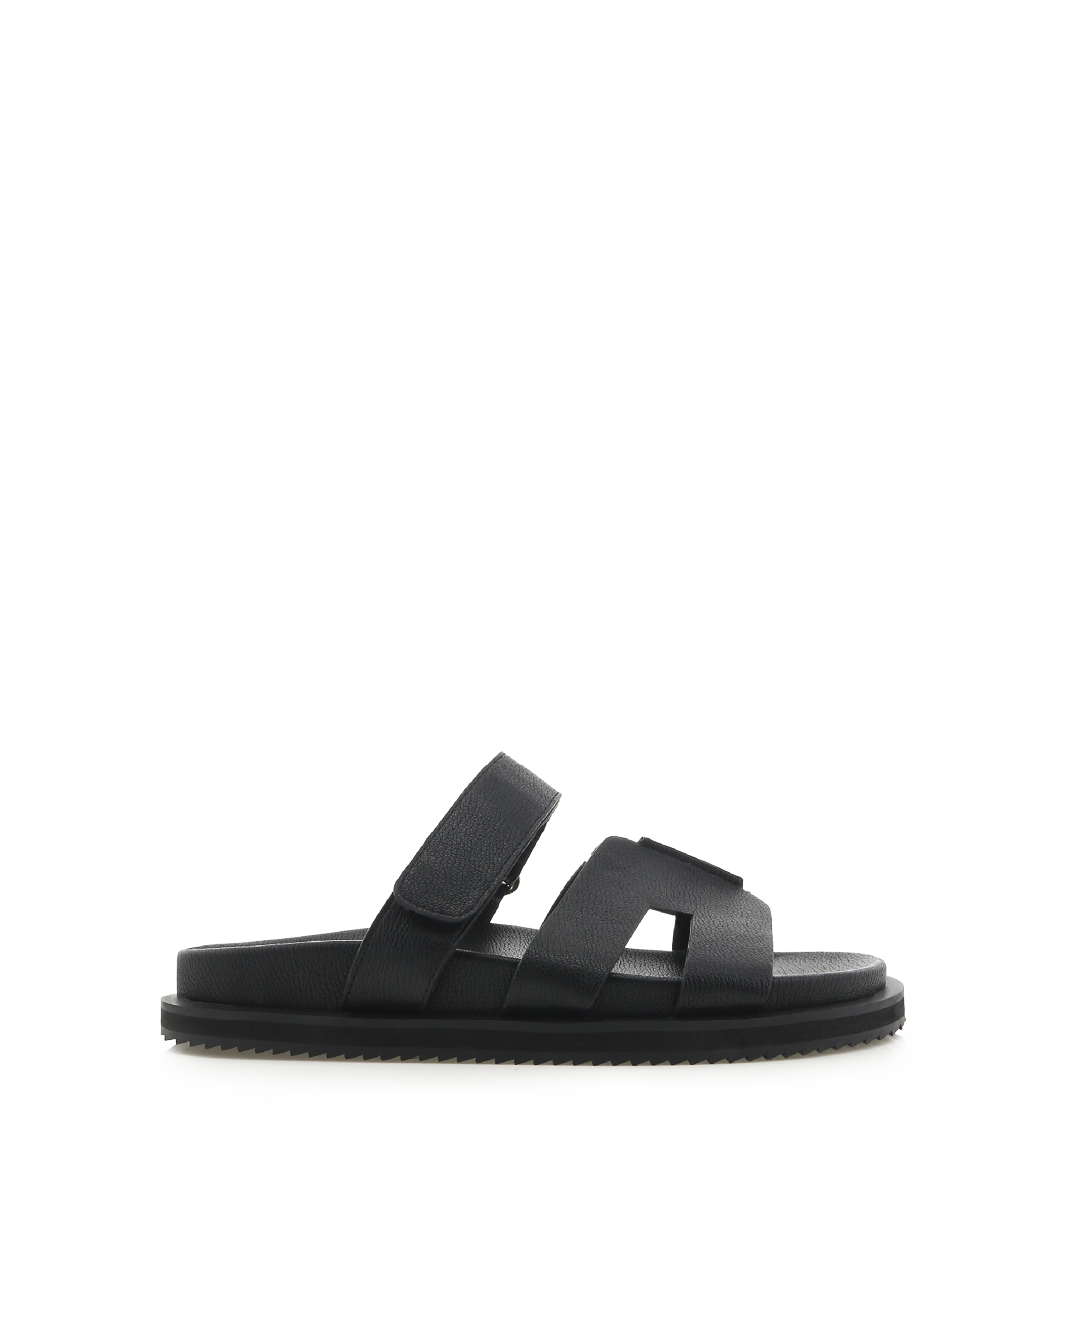 THEON - BLACK-Sandals-Billini-BILLINI USA